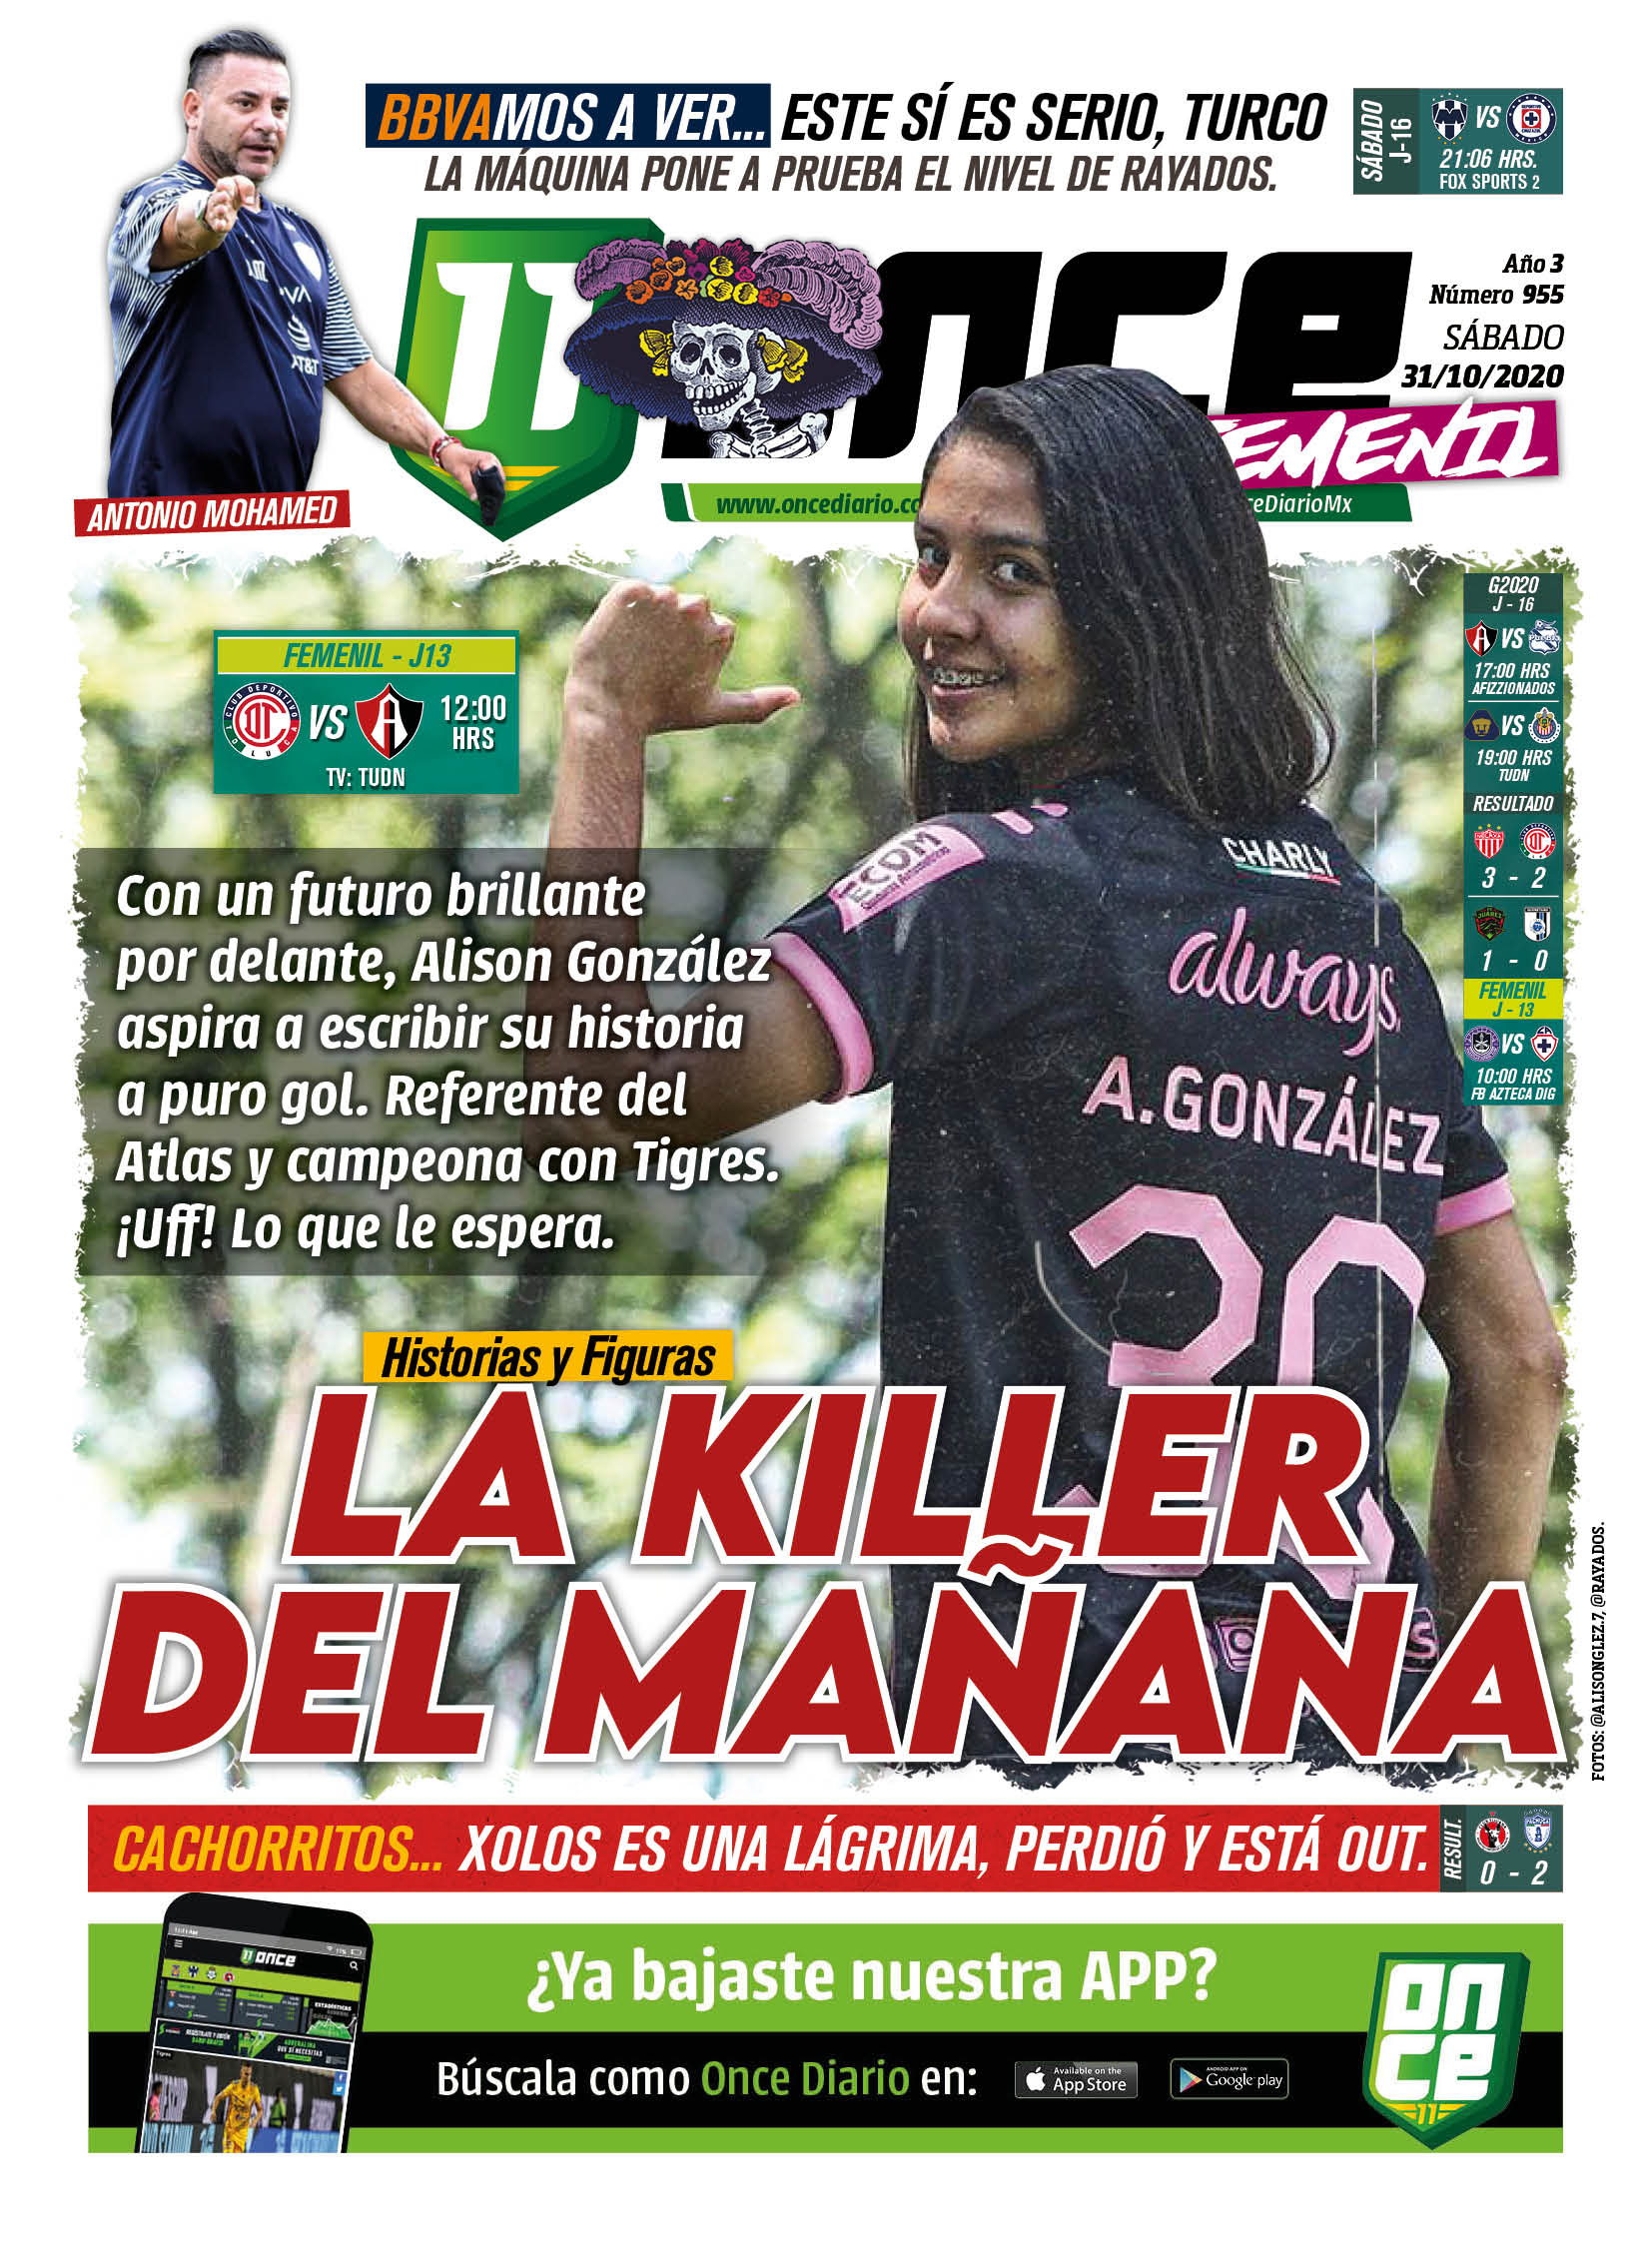 Alison González: La killer del mañana en la Liga MX Femenil